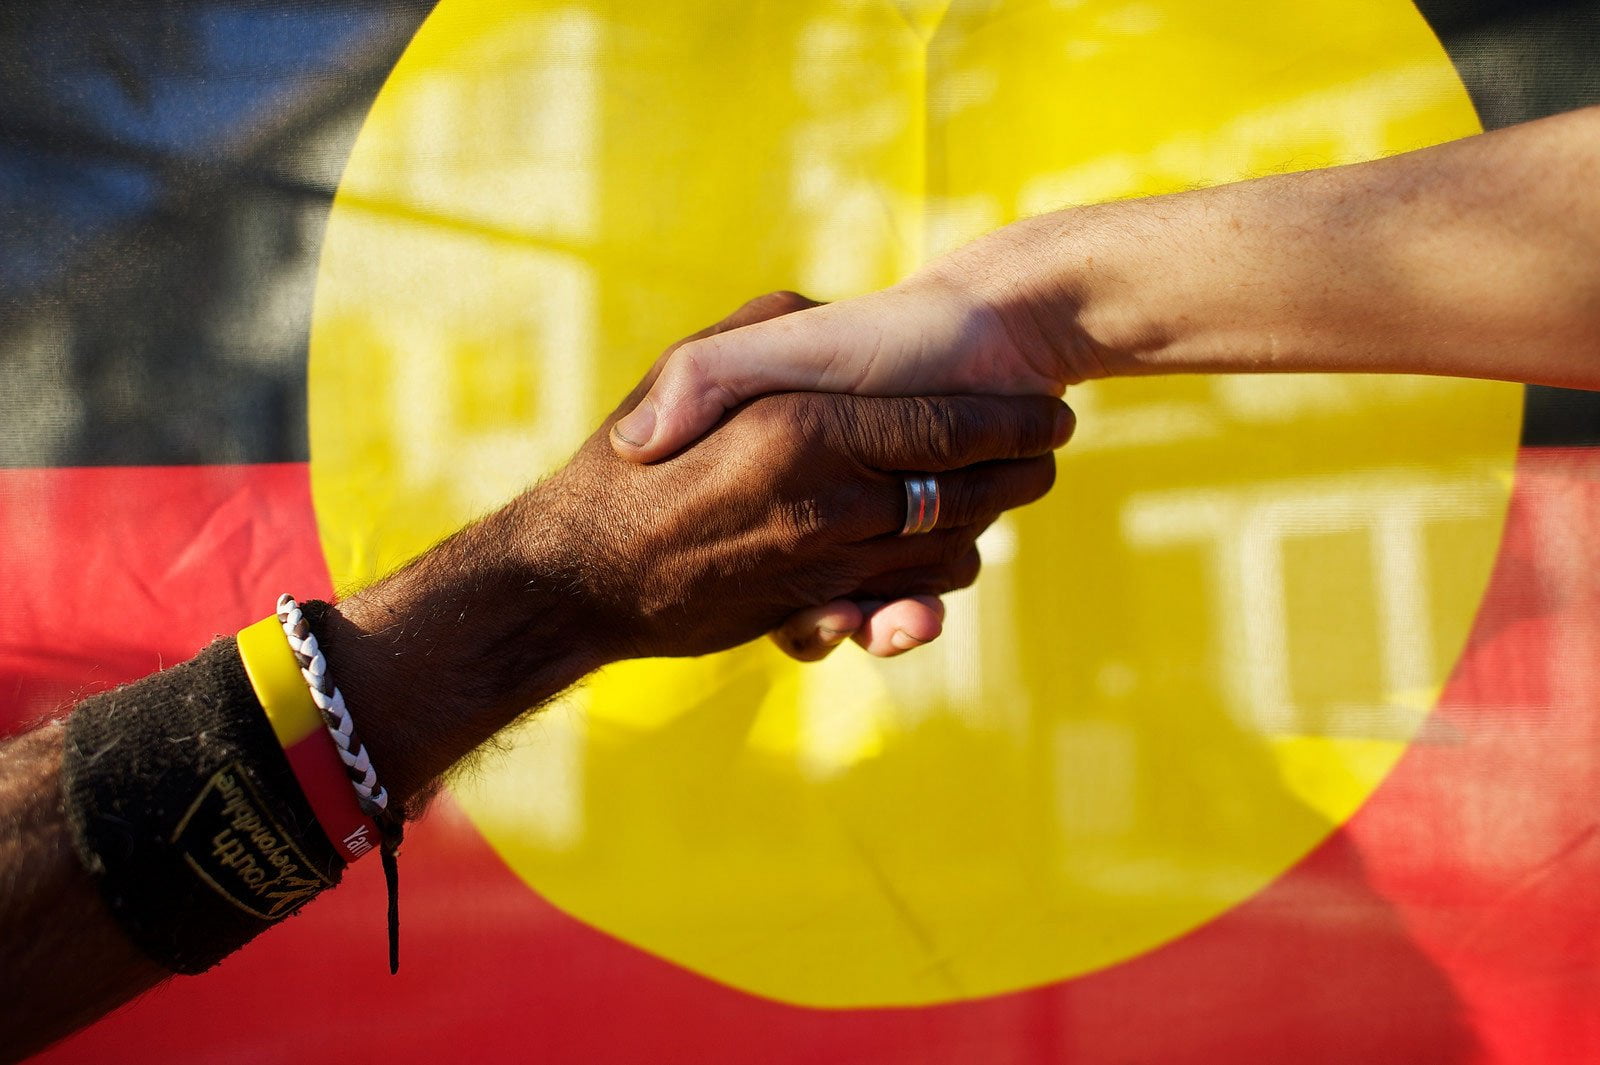 Raising Awareness Around Indigenous Rights Uwa Amnesty International Australia